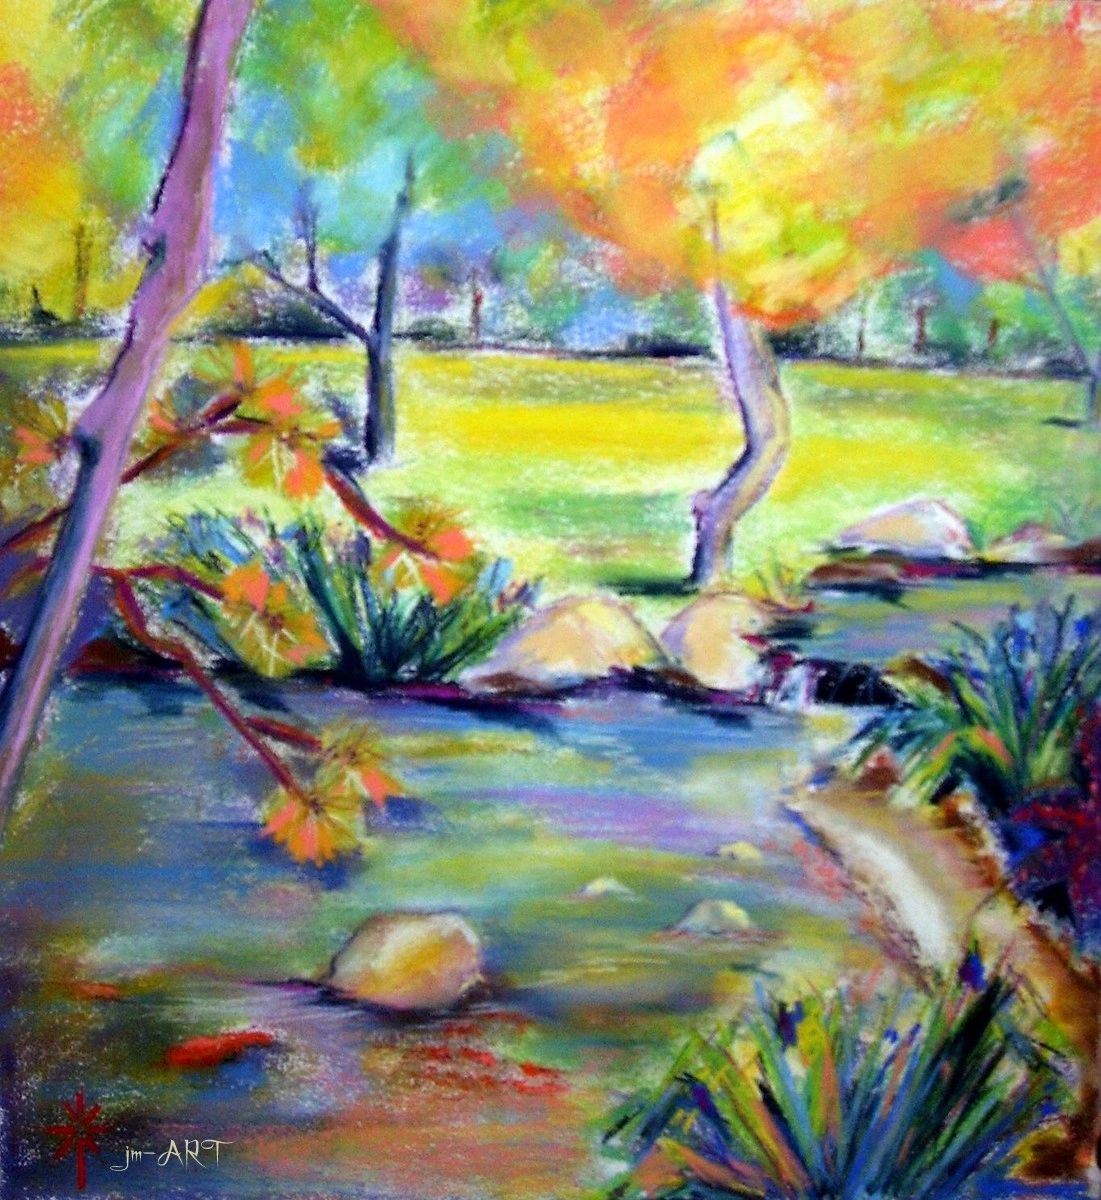 pastel,koi,koi pond,rainbow palette,jm-ART,landscape,water, trees,glen,park,Brand Park, Glendale, CA